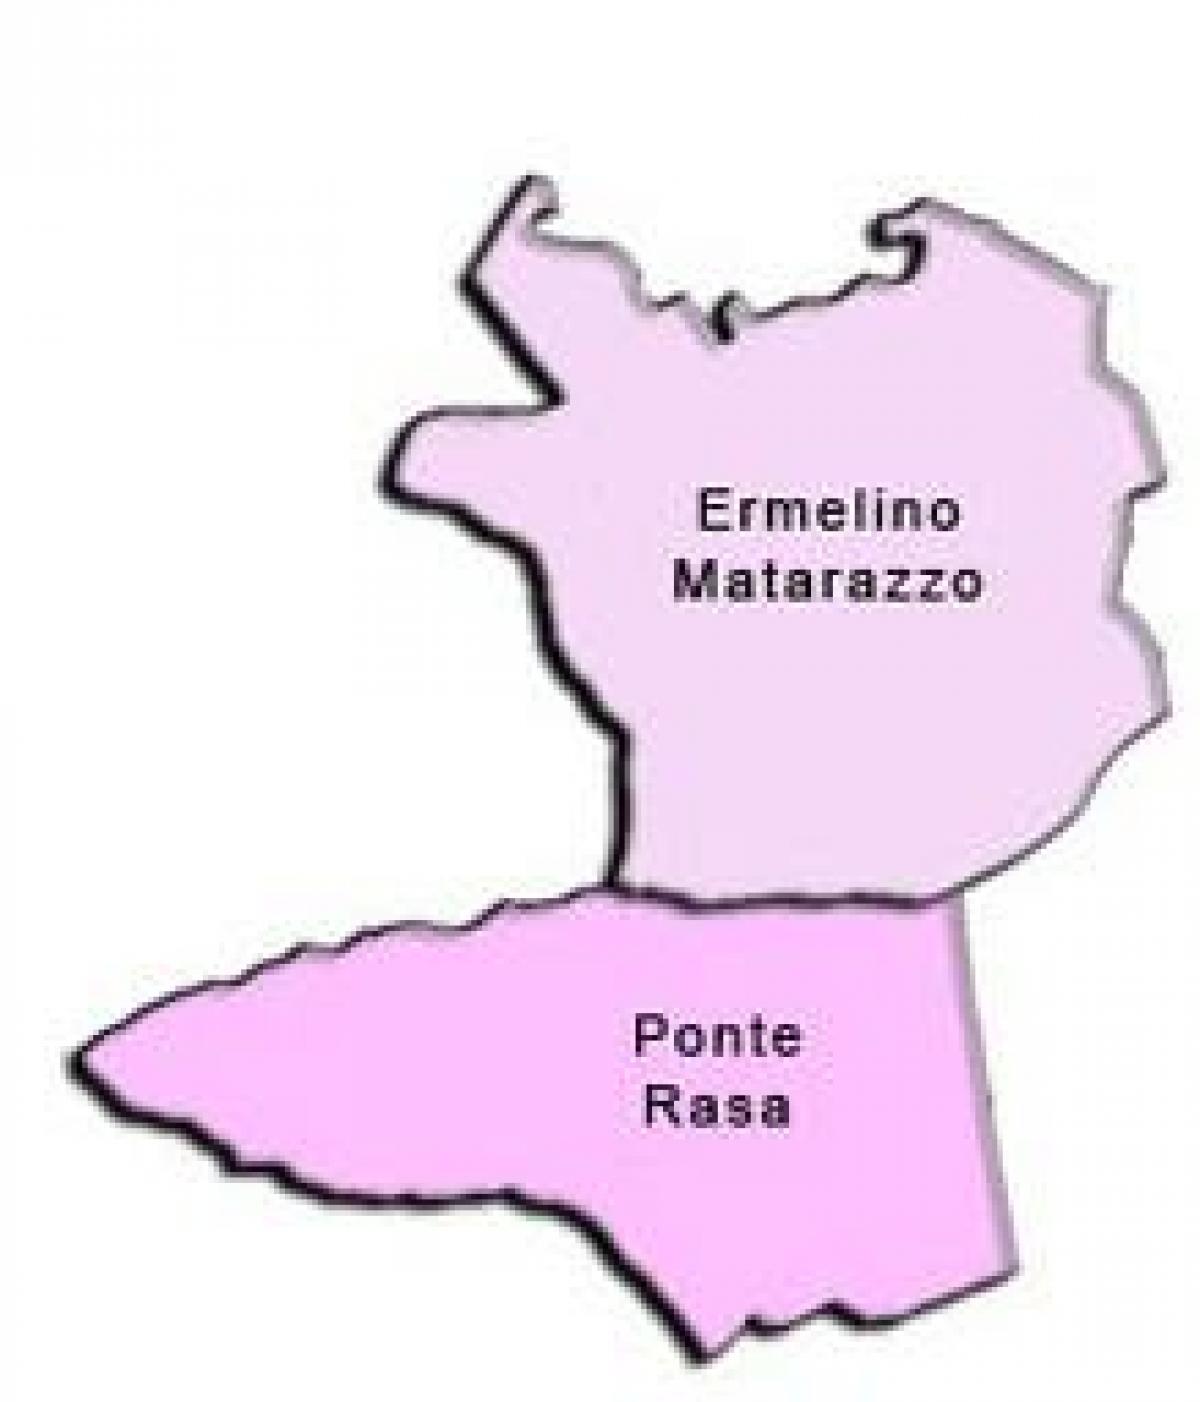 Карта на Ermelino Matarazzo под-префектурата